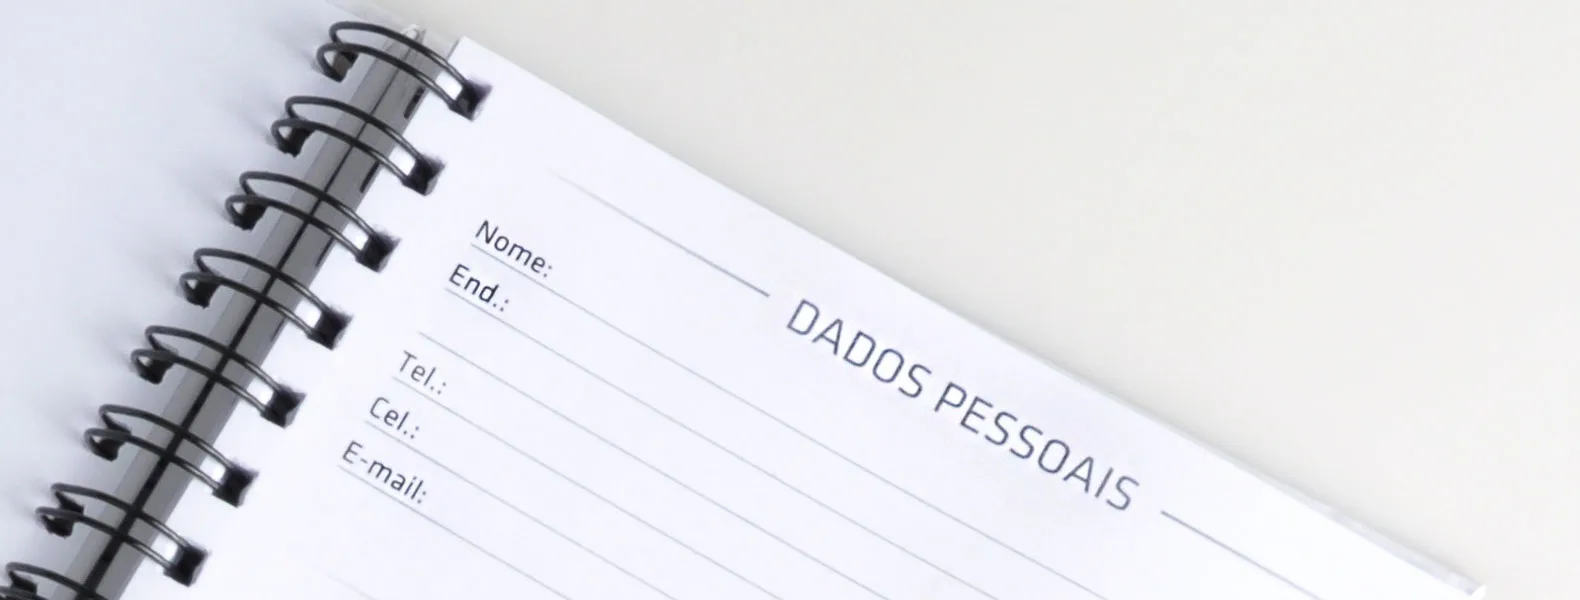 Caderno para anotações wire-o branco com capa dura. Conta com folha para dados pessoais, calendário e 100 folhas pautadas. Gramatura da folha de 70 g/m2